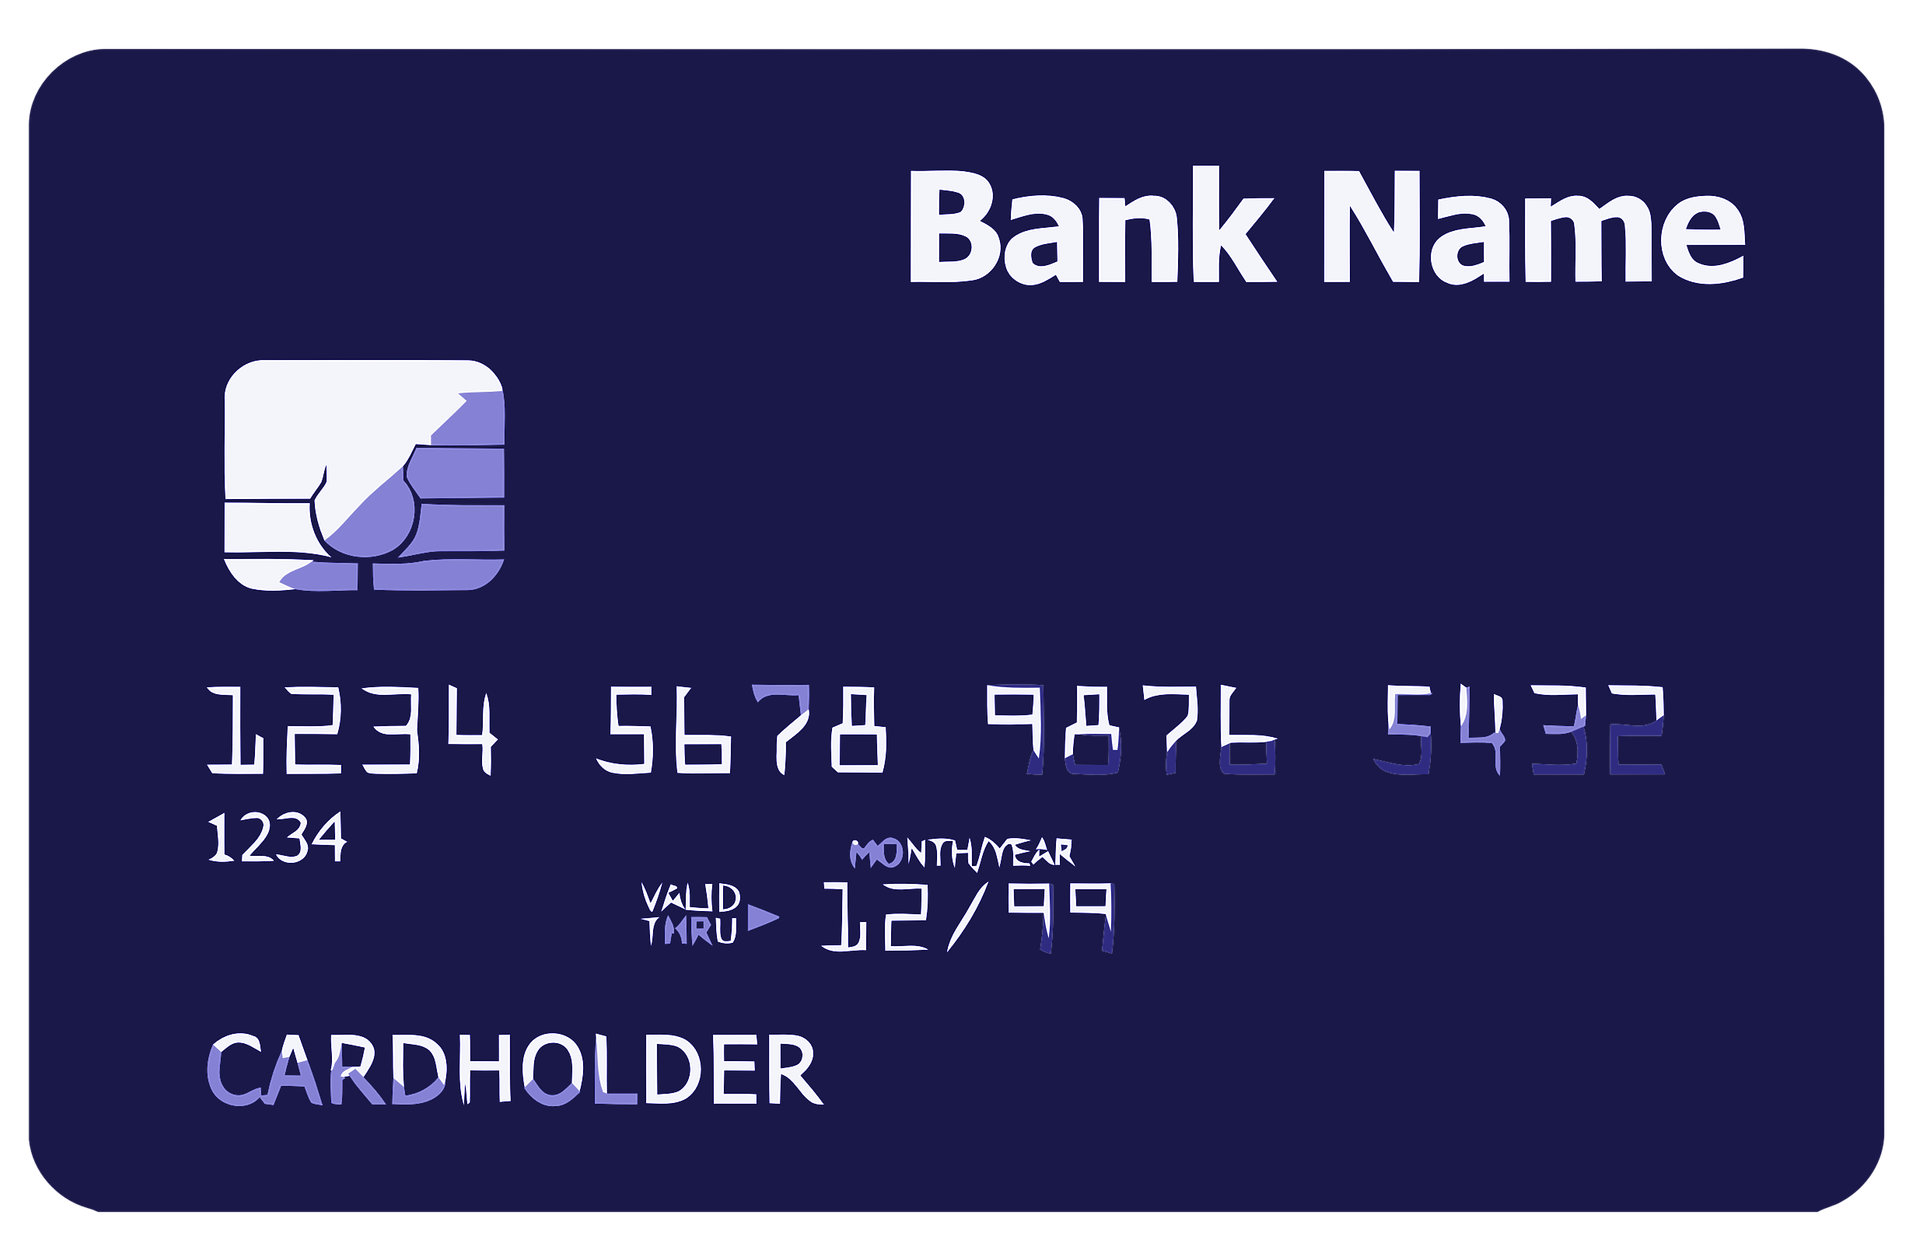 Credit Card Scams – Huge Problem